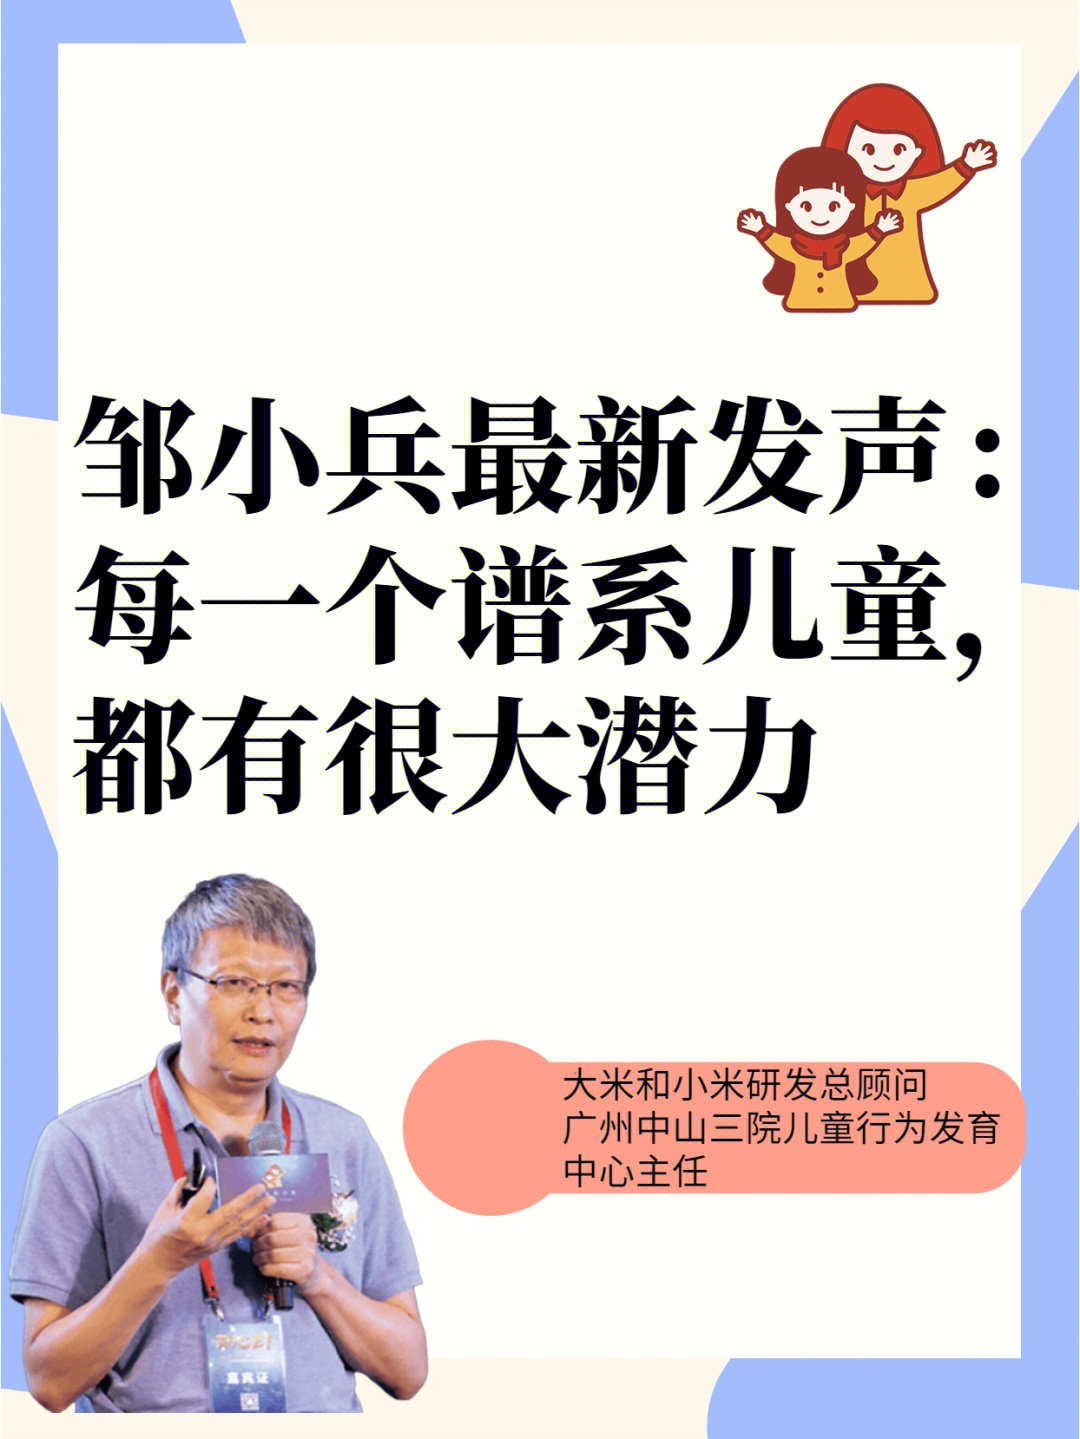 近日,在一场公益讲座上,广东中山三院儿童发育行为中心主任医师邹小兵